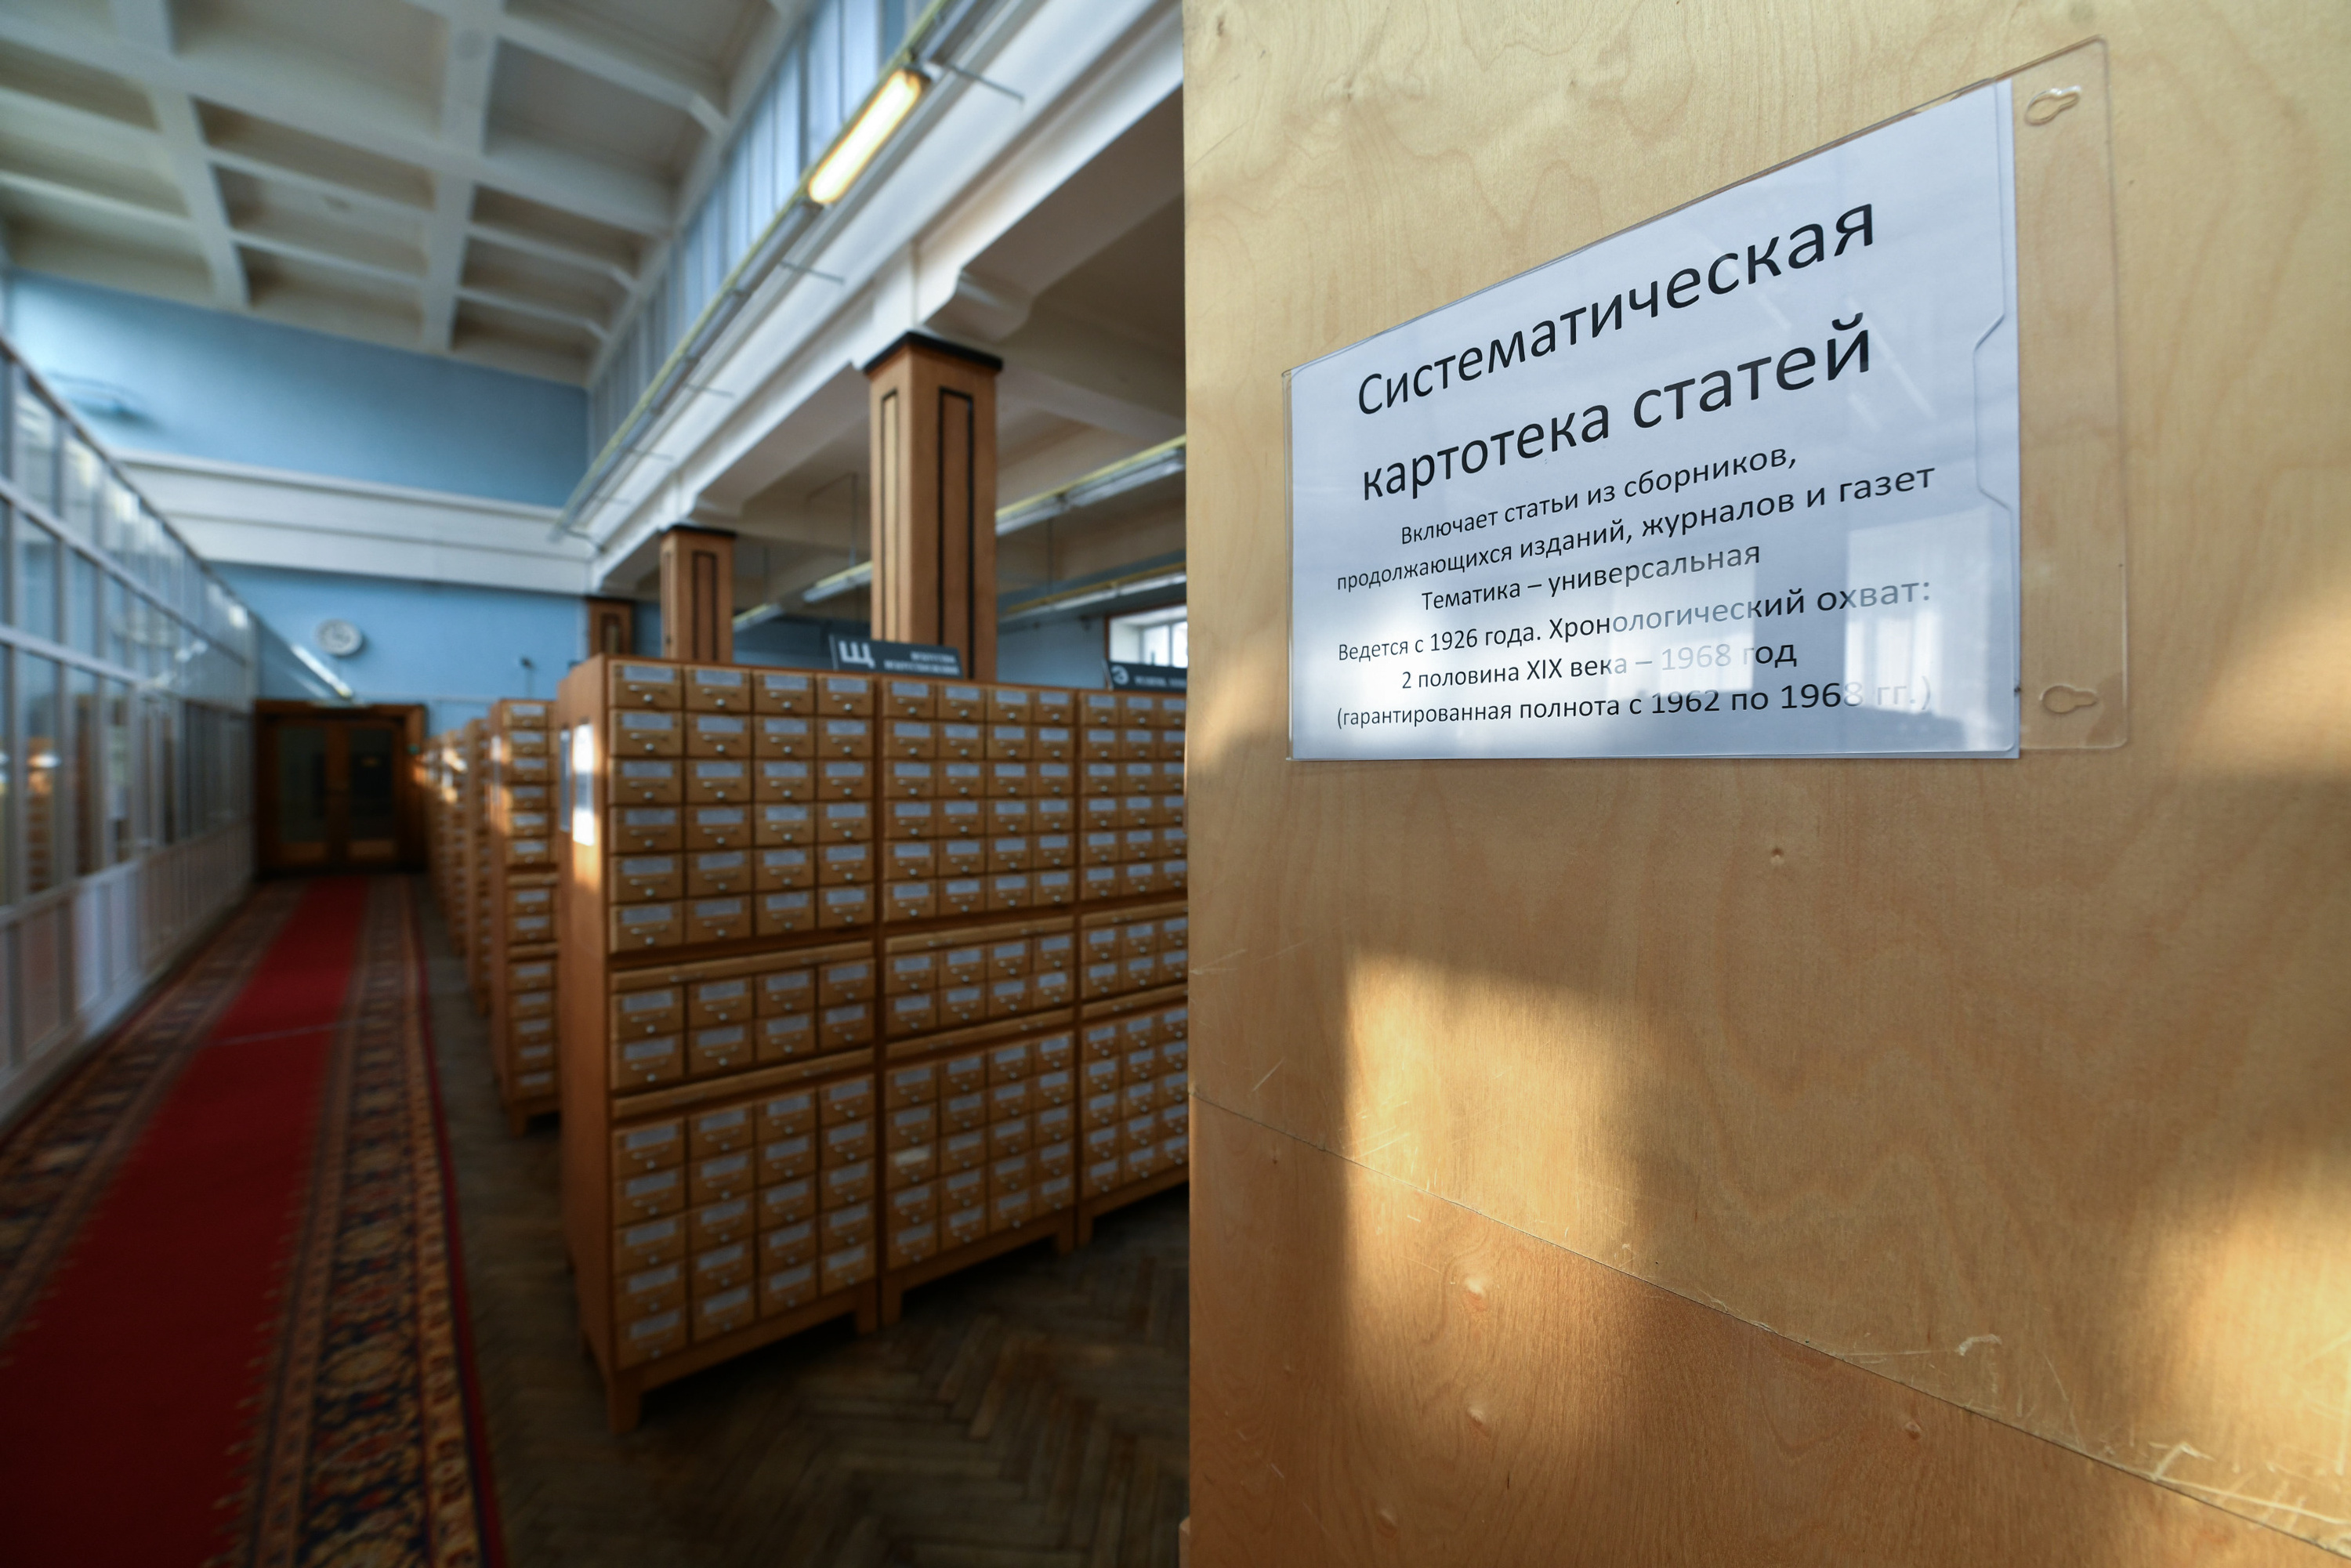 В «Ленинке» сохранено масштабное собрание периодики